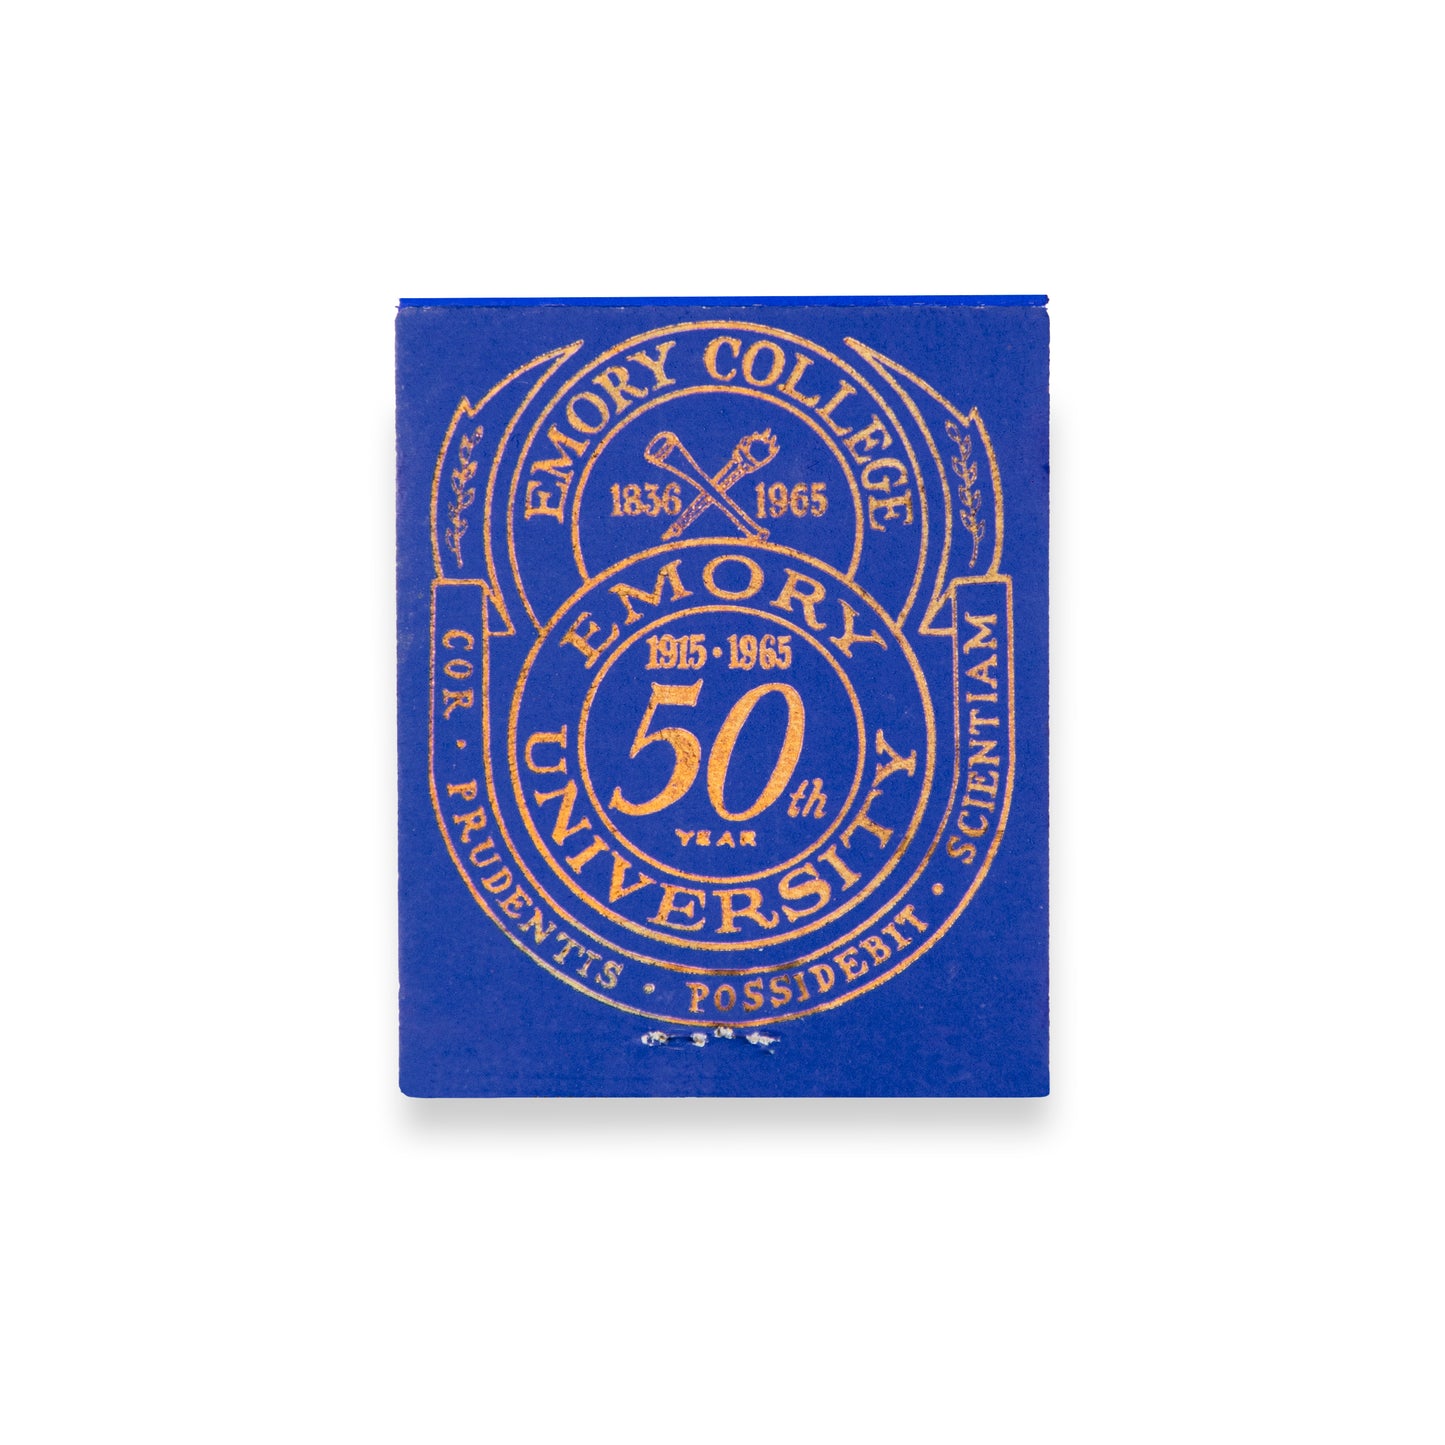 Emory University (Emblem)